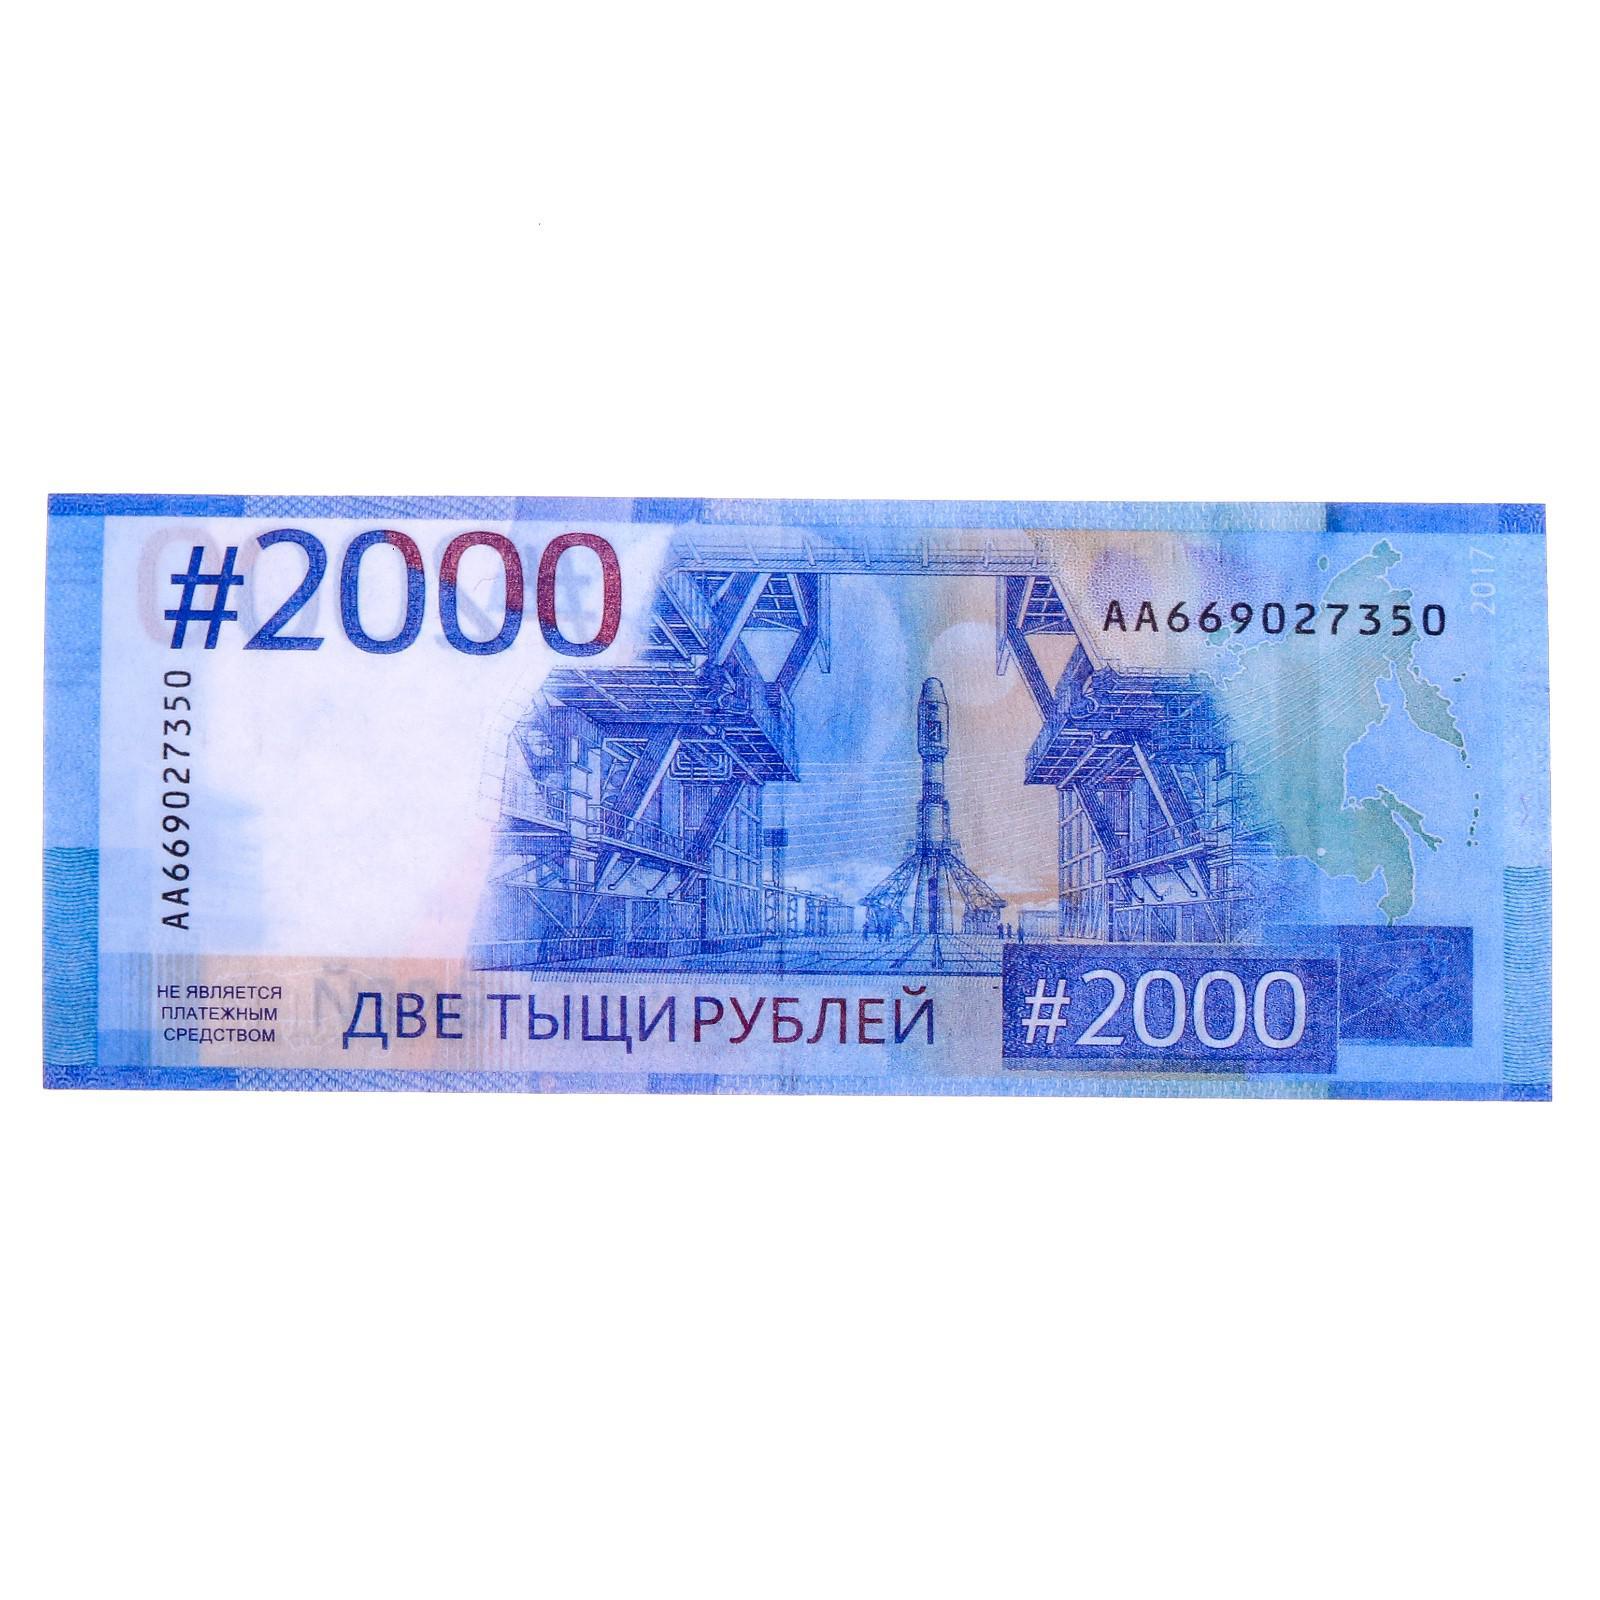 2000 Рублей банкнота